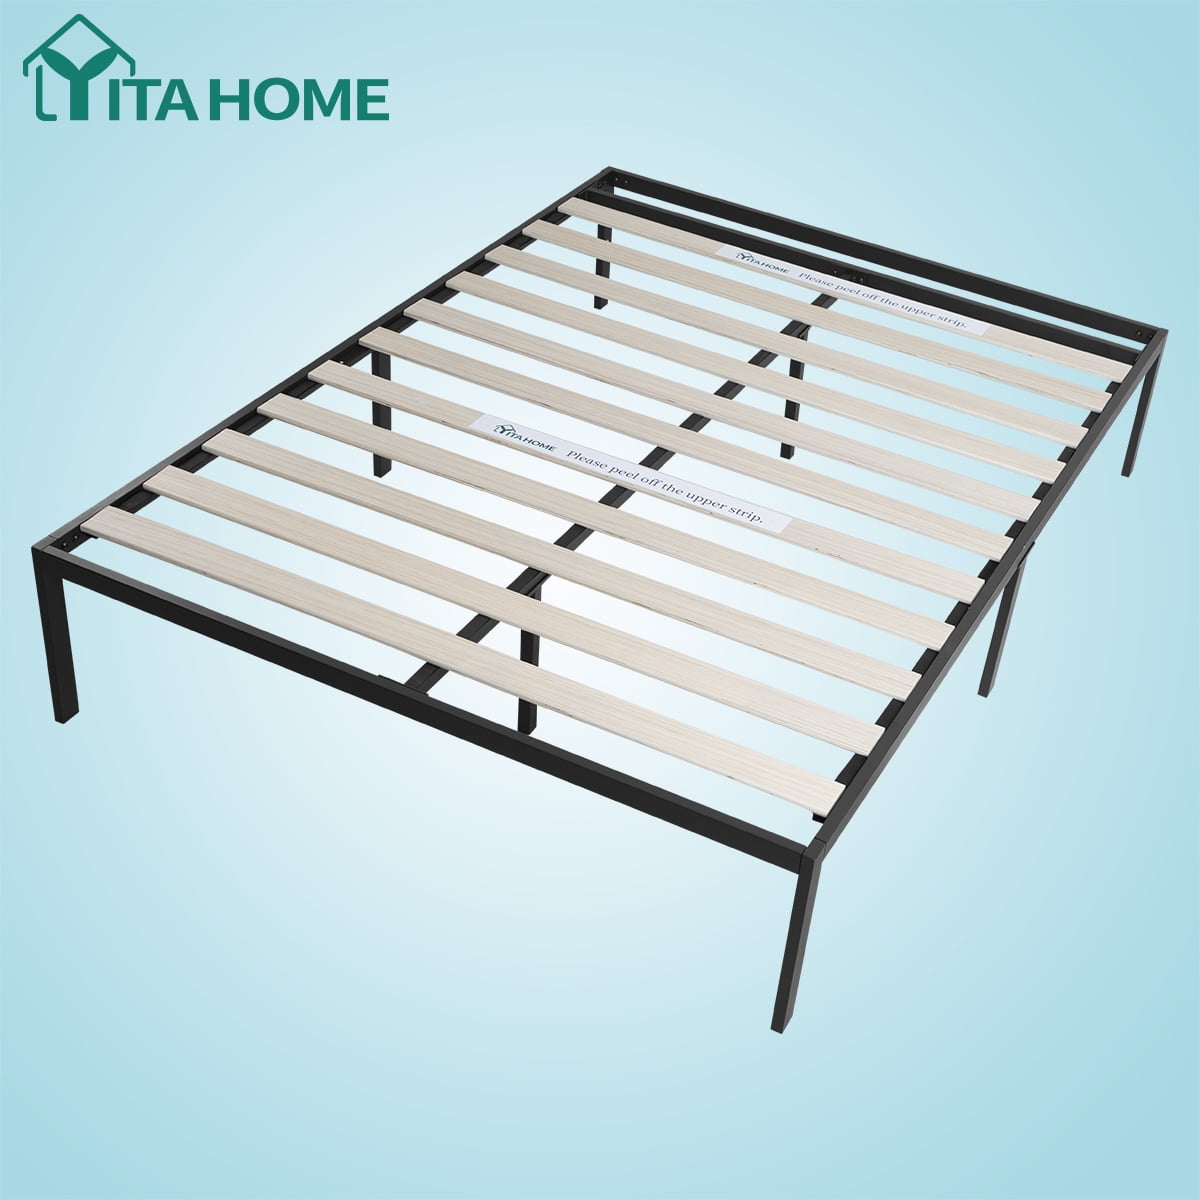 14 Metal Bed Frame Platform Queen Size, Adding Slats To Metal Bed Frame